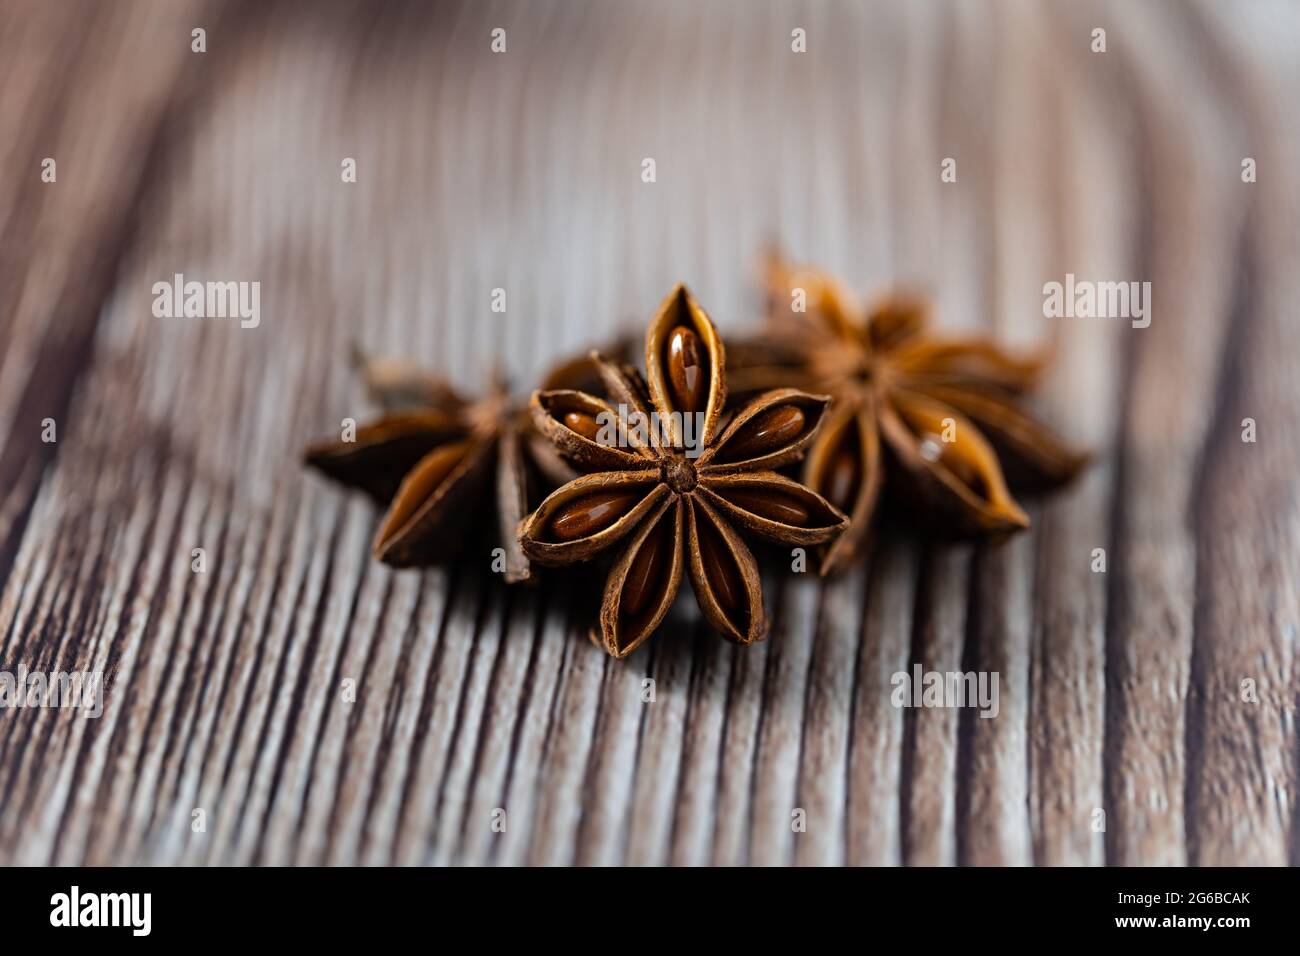 Nahaufnahme von Sternanise auf Holztisch, Lebensmittelkonzept Stockfoto